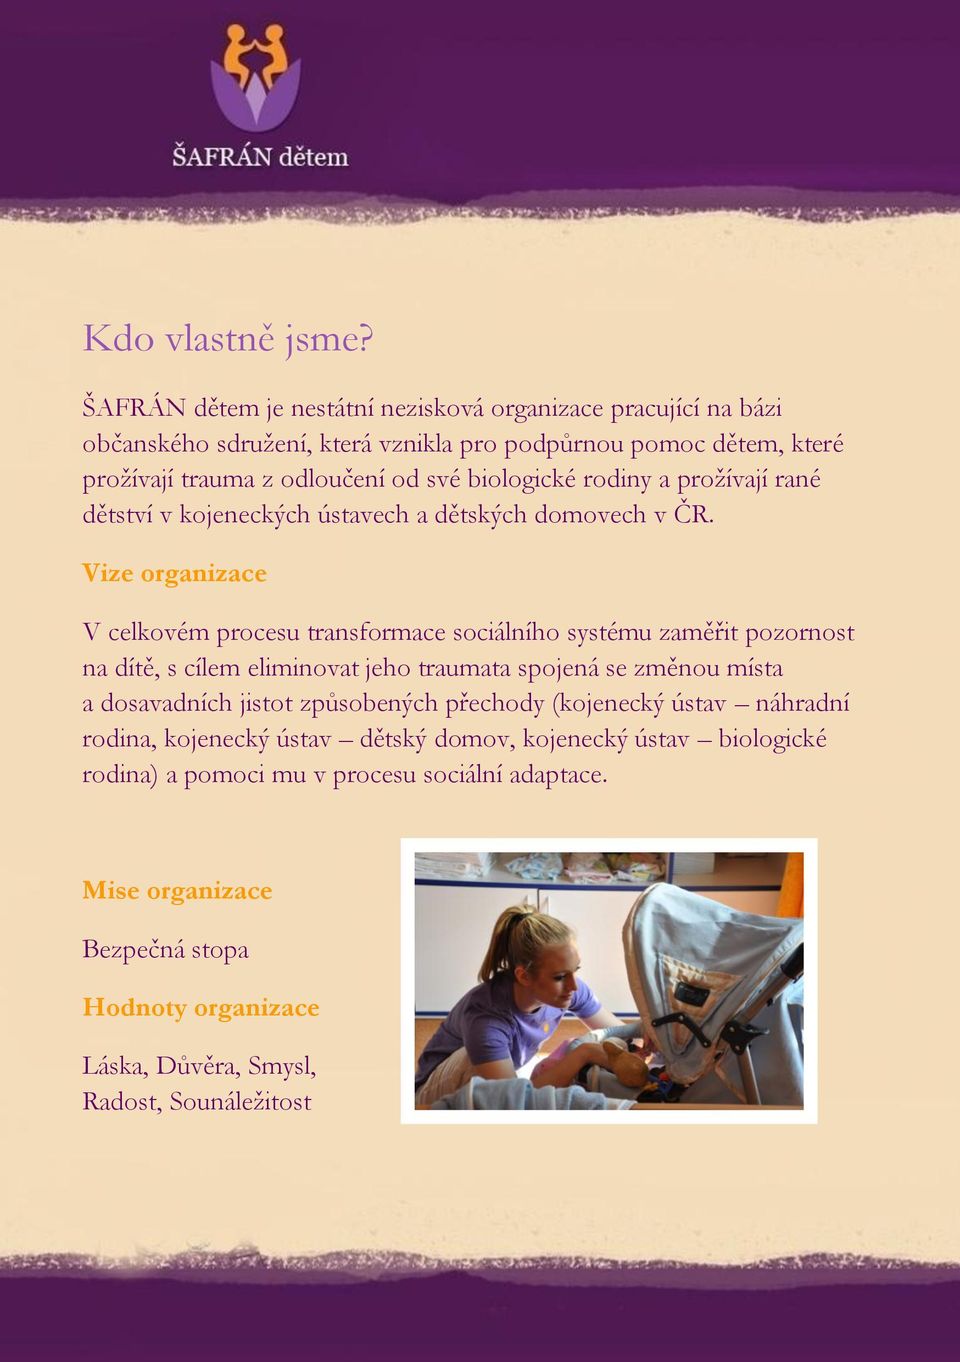 biologické rodiny a prožívají rané dětství v kojeneckých ústavech a dětských domovech v ČR.